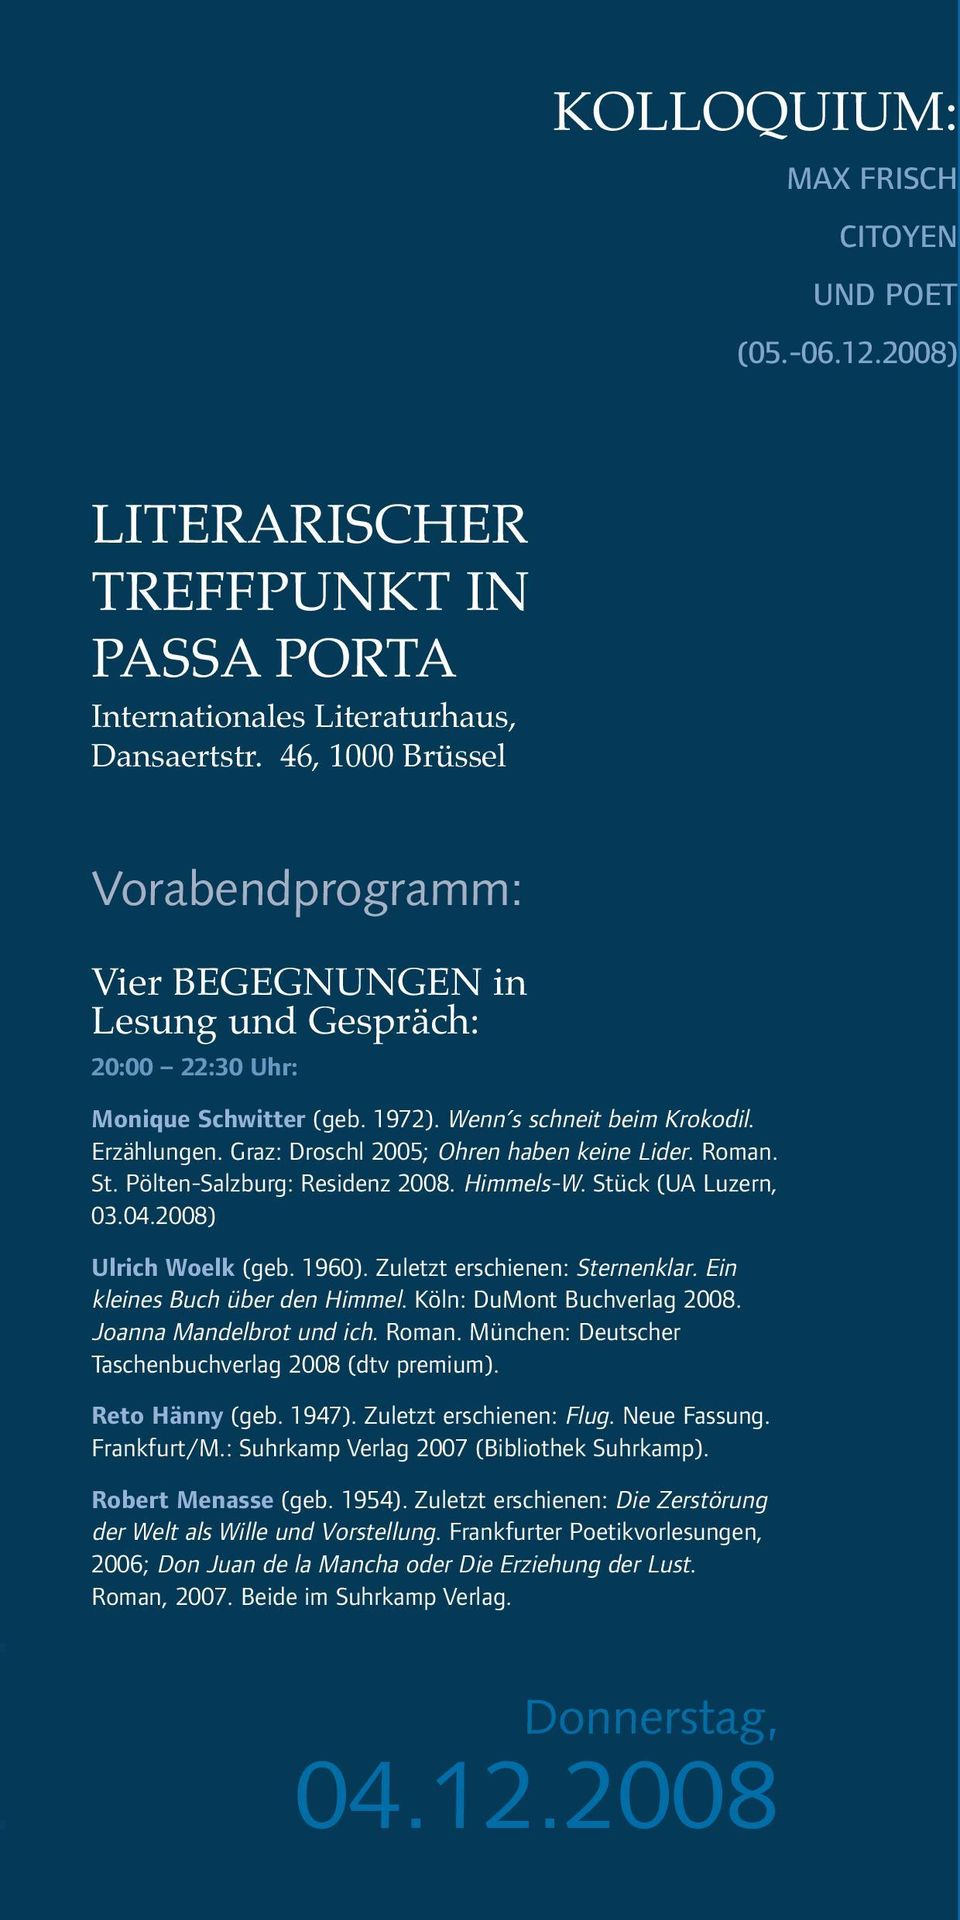 Graz: Droschl 2005; Ohren haben keine Lider. Roman. St. Pölten-Salzburg: Residenz 2008. Himmels-W. Stück (UA Luzern, 03.04.2008) Ulrich Woelk (geb. 1960). Zuletzt erschienen: Sternenklar.